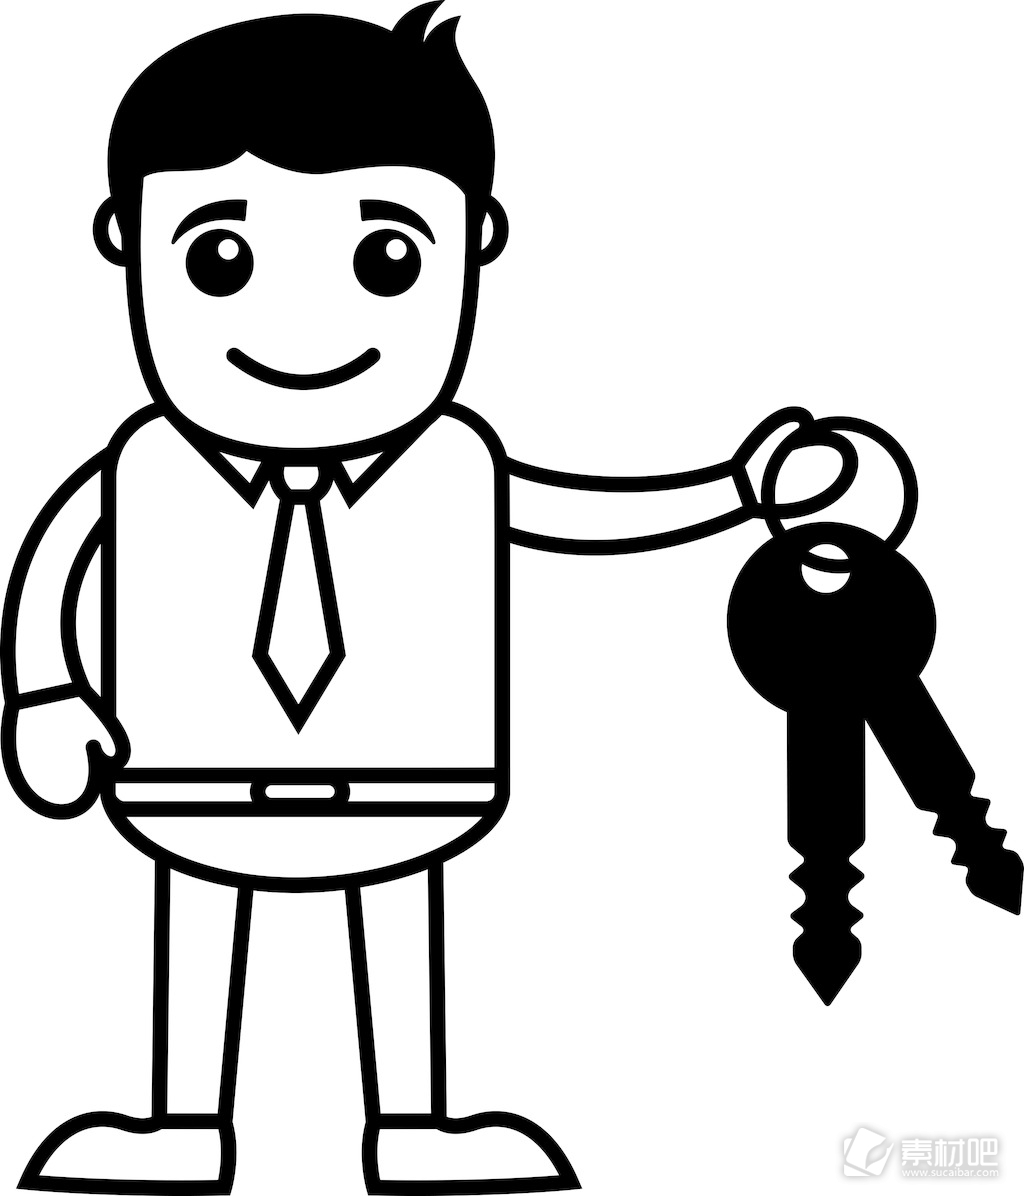 人与车钥匙-房地产贷款的概念-商业卡通